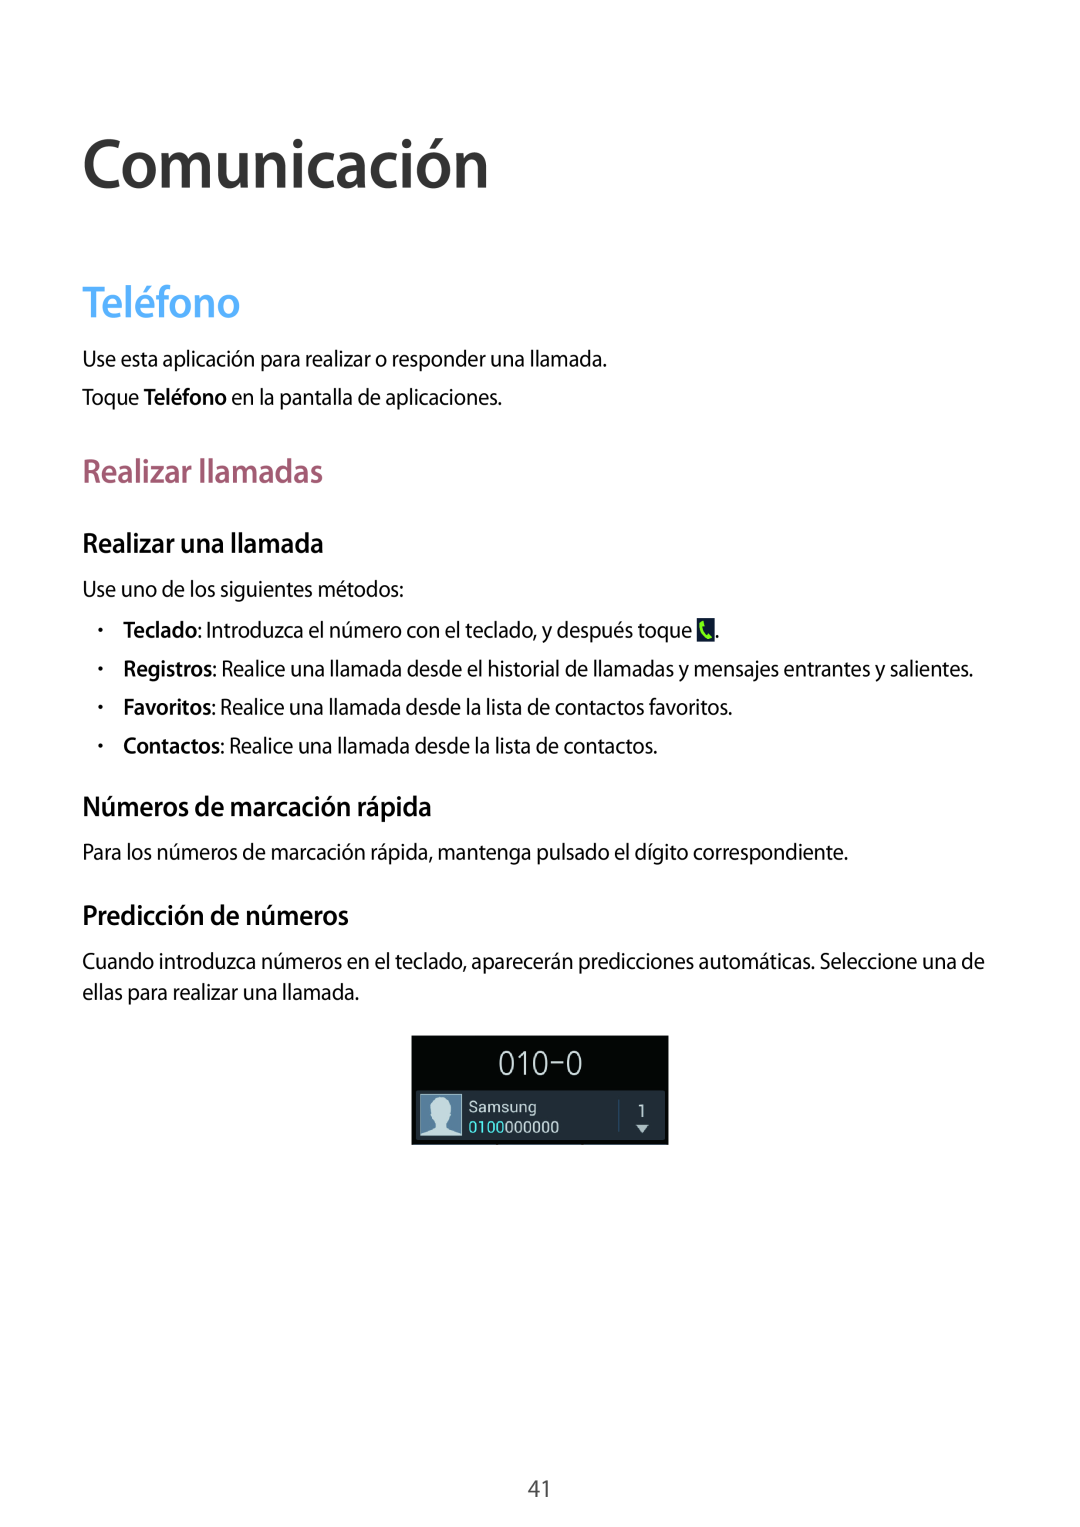 Samsung GT-I9105UANDBT manual Comunicación, Teléfono, Realizar llamadas, Realizar una llamada, Números de marcación rápida 